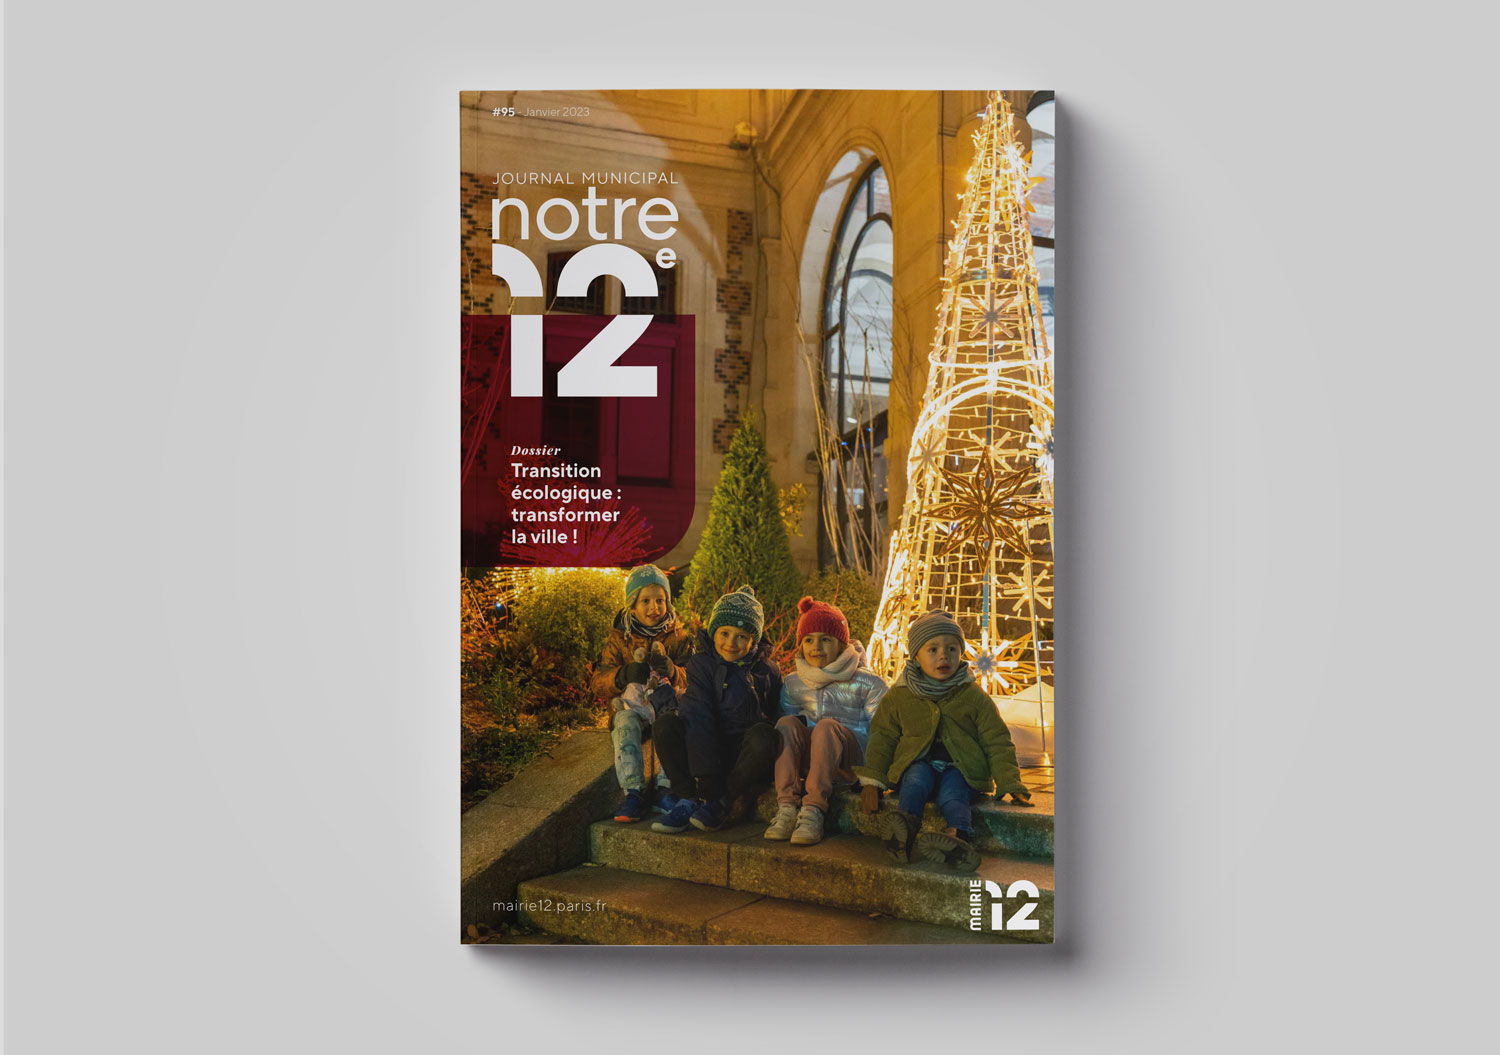 Mairie du 12e – Journal d’arrondissement « Notre 12e »